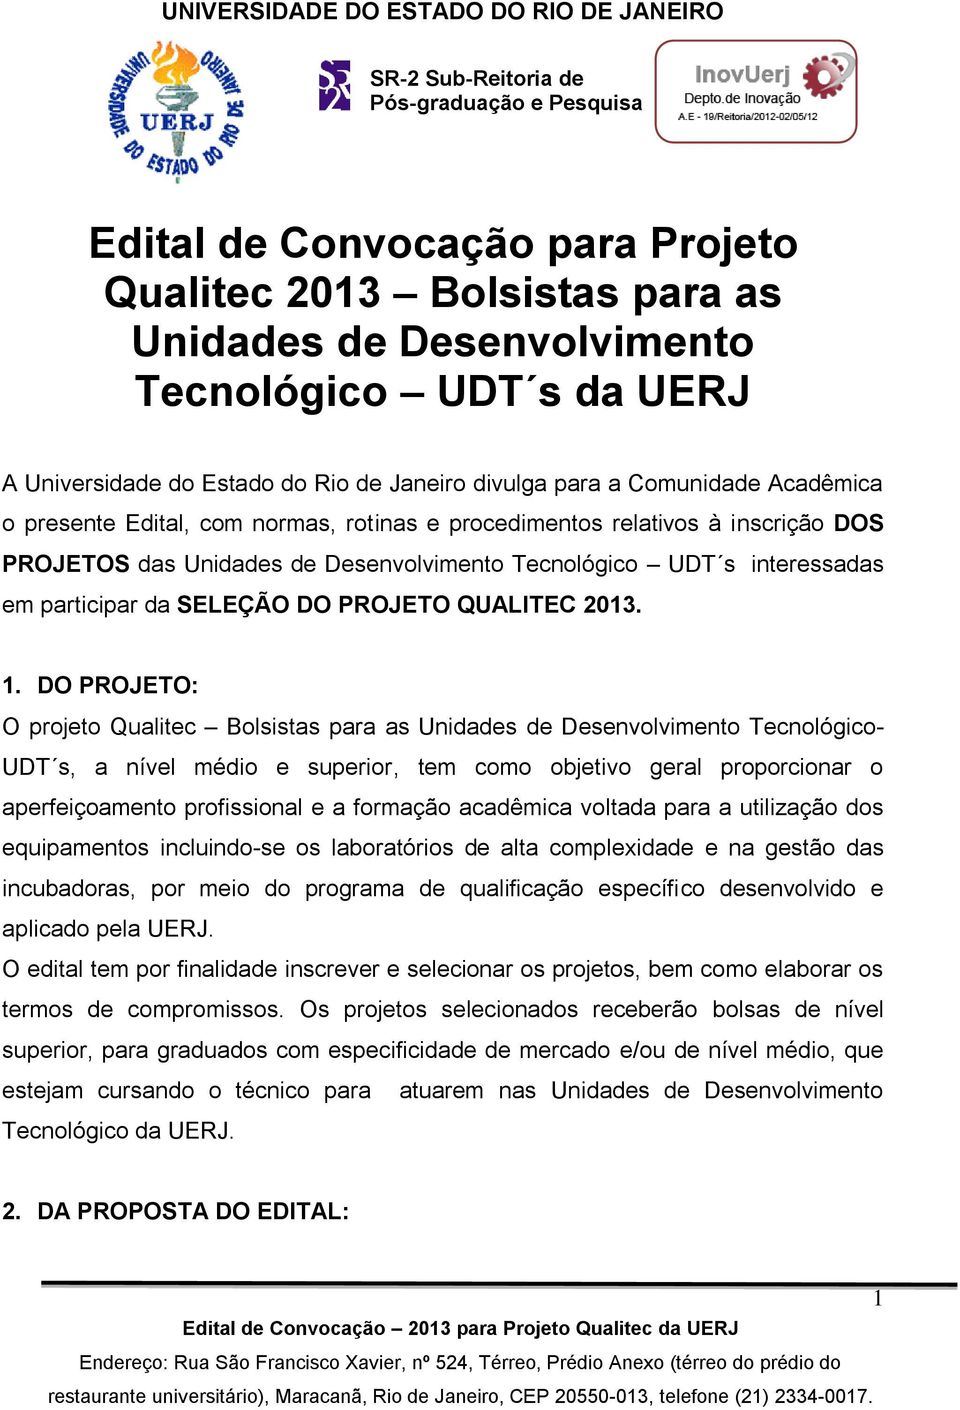 Desenvolvimento Tecnológico UDT s interessadas em participar da SELEÇÃO DO PROJETO QUALITEC 2013. 1.